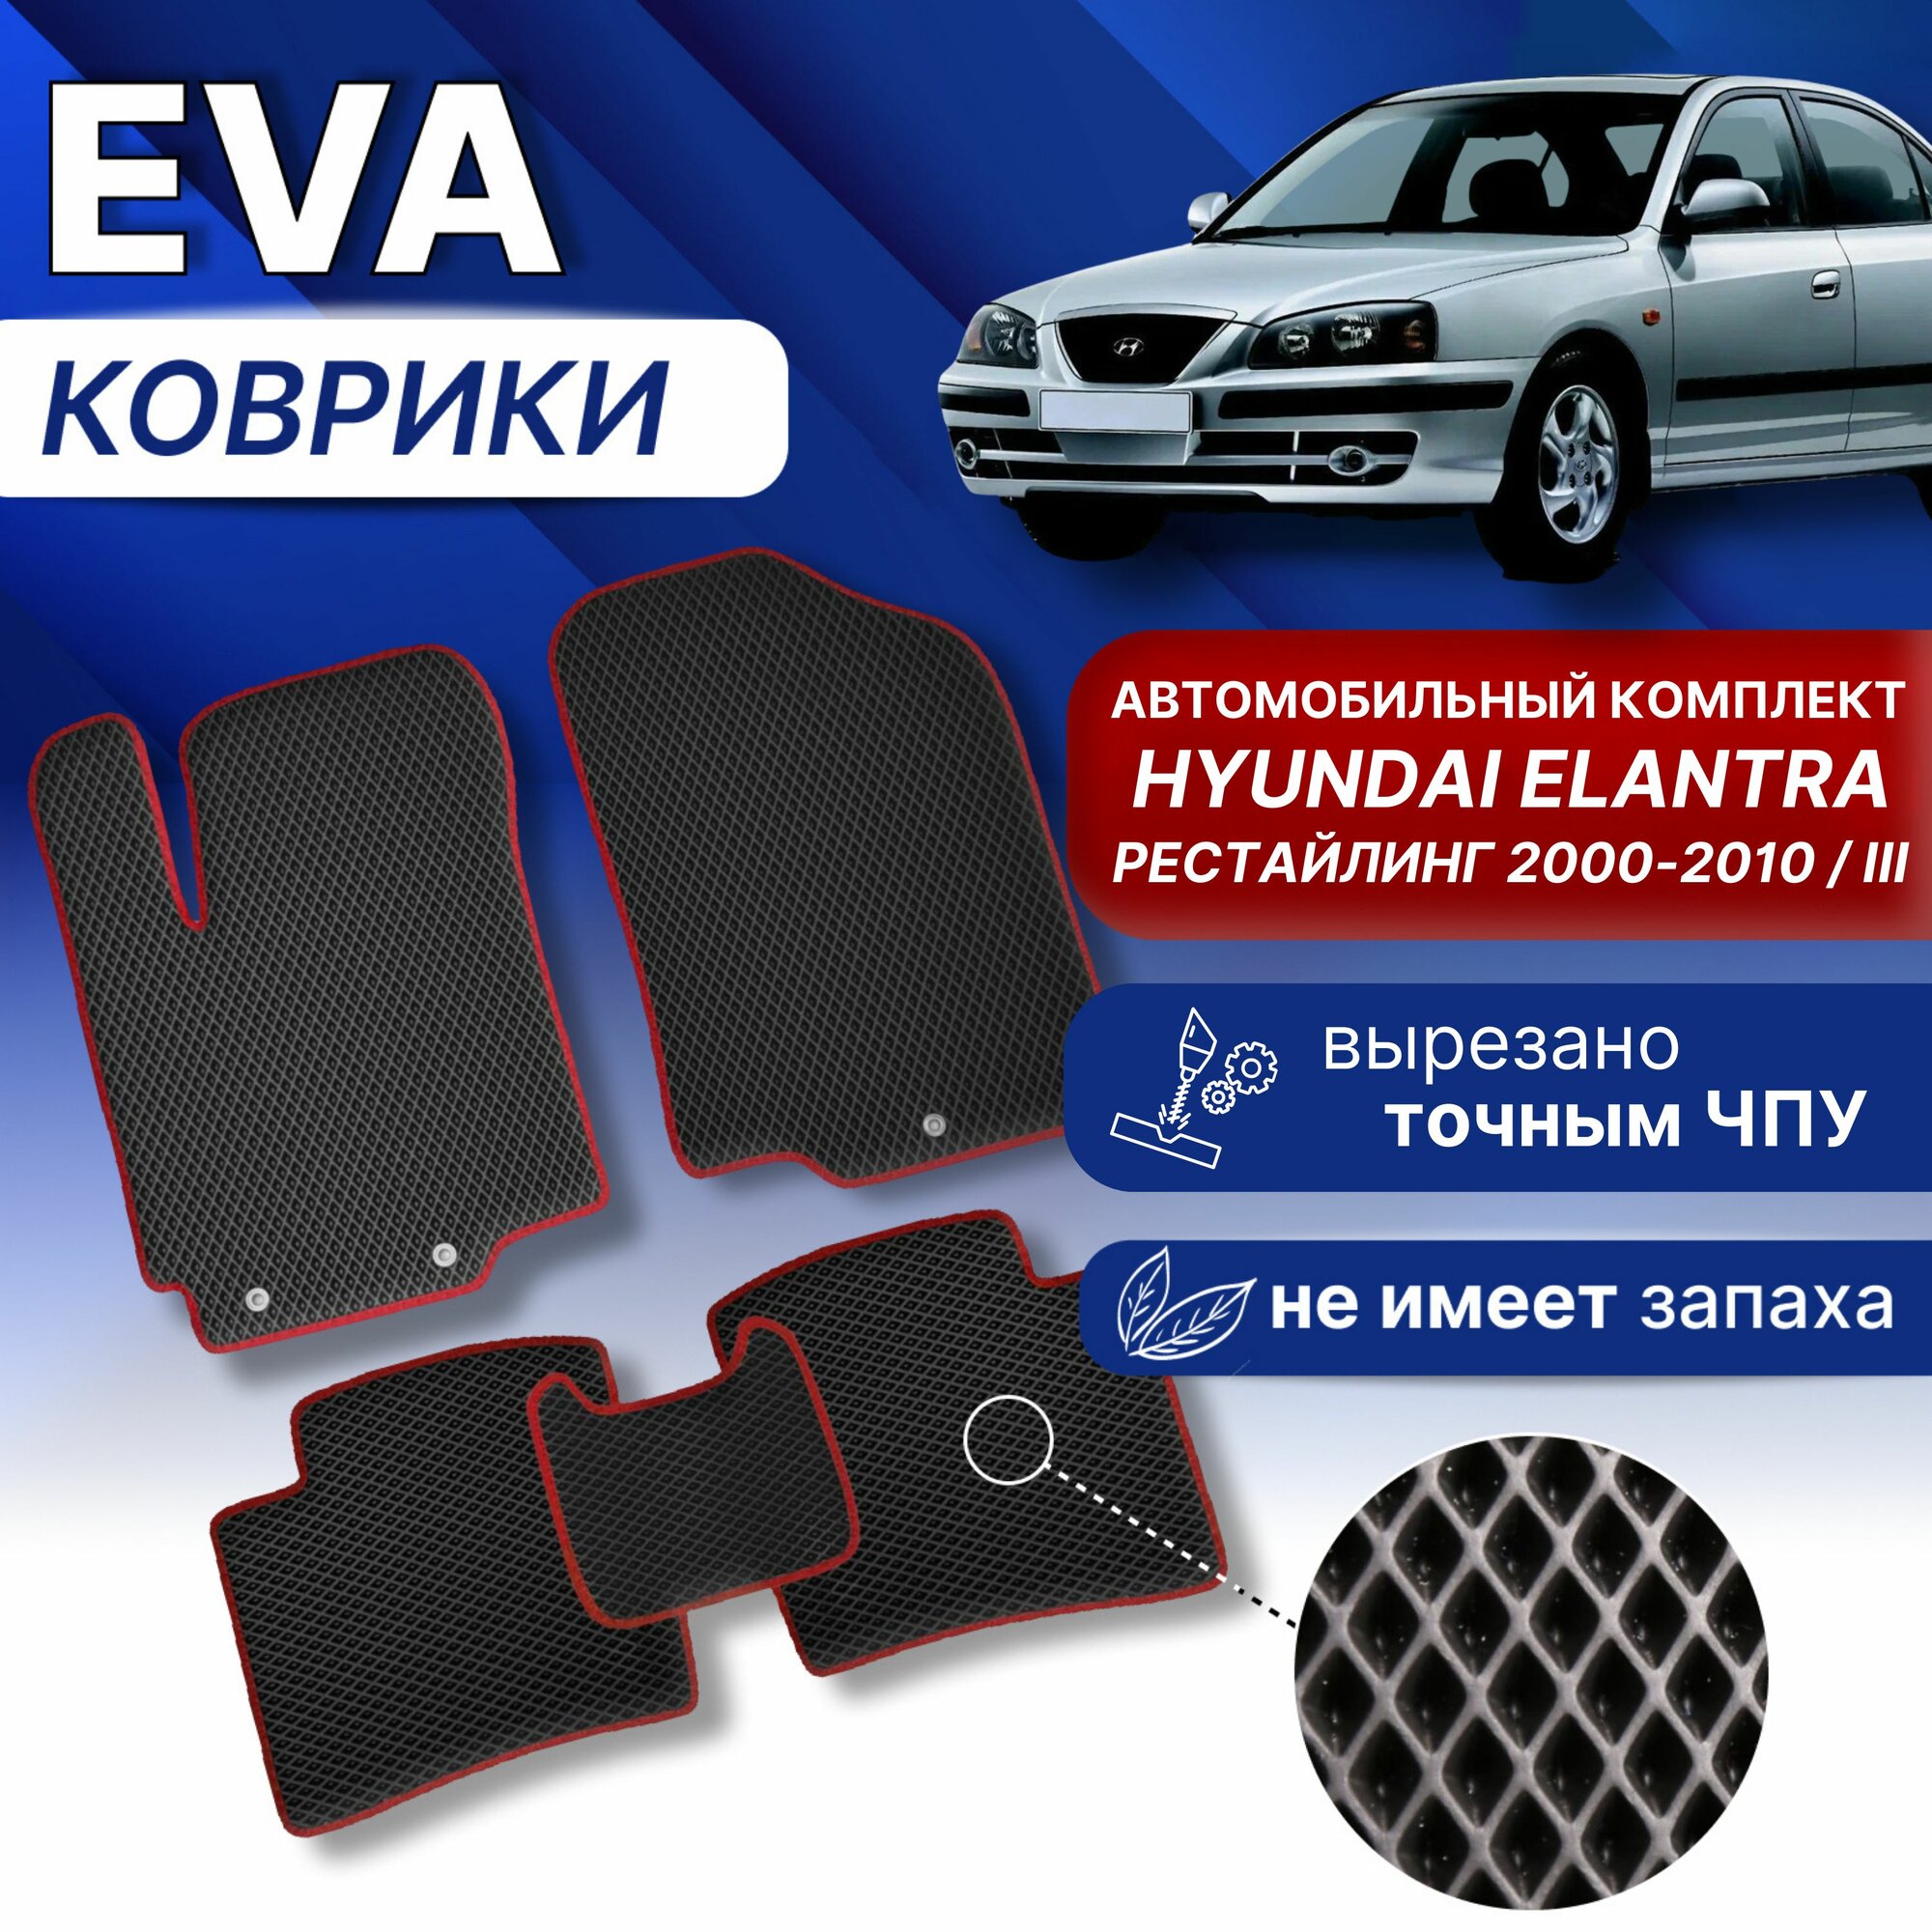 EVA Коврики в Хендай элантра 3 рестайлинг (серый/серый кант) ЕВА ЭВА Hyundai Elantra 2000-2010г.